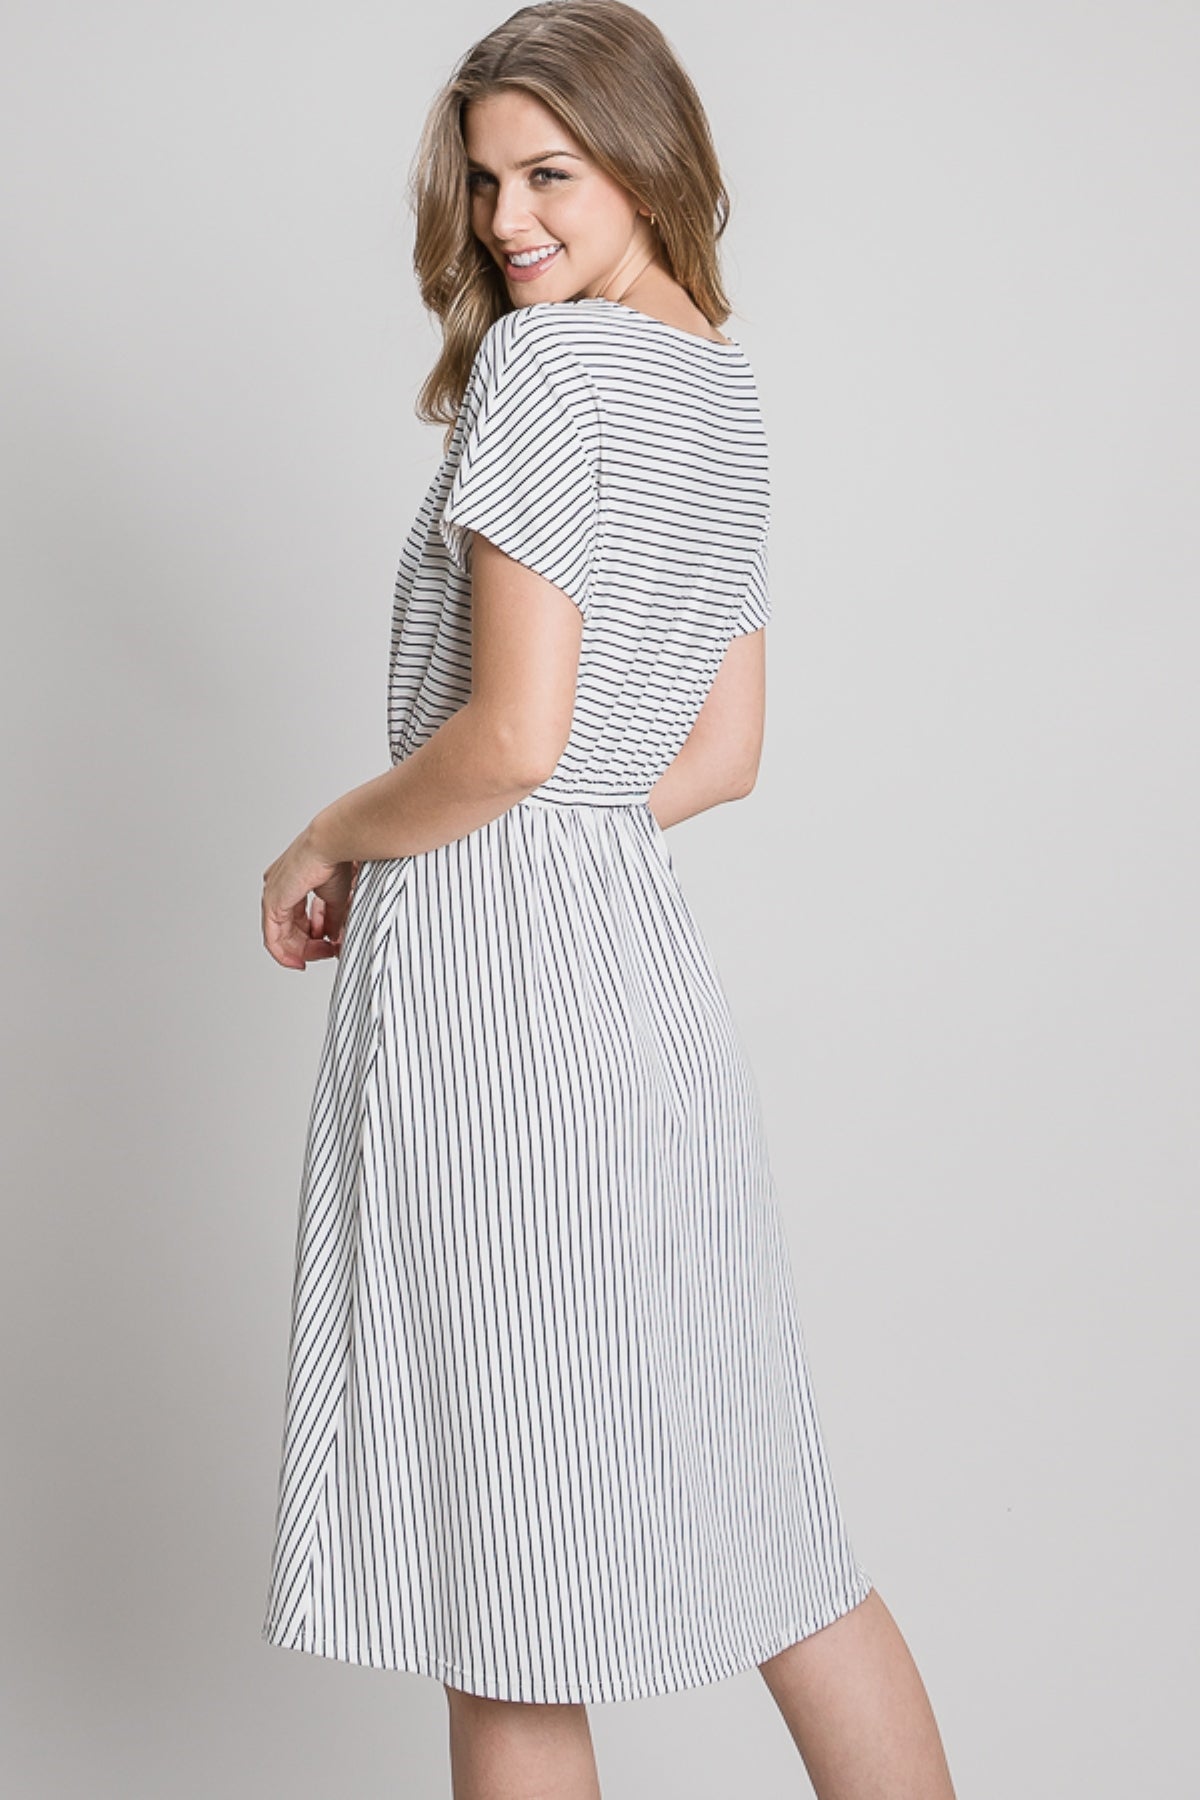 Bennet Striped Dress